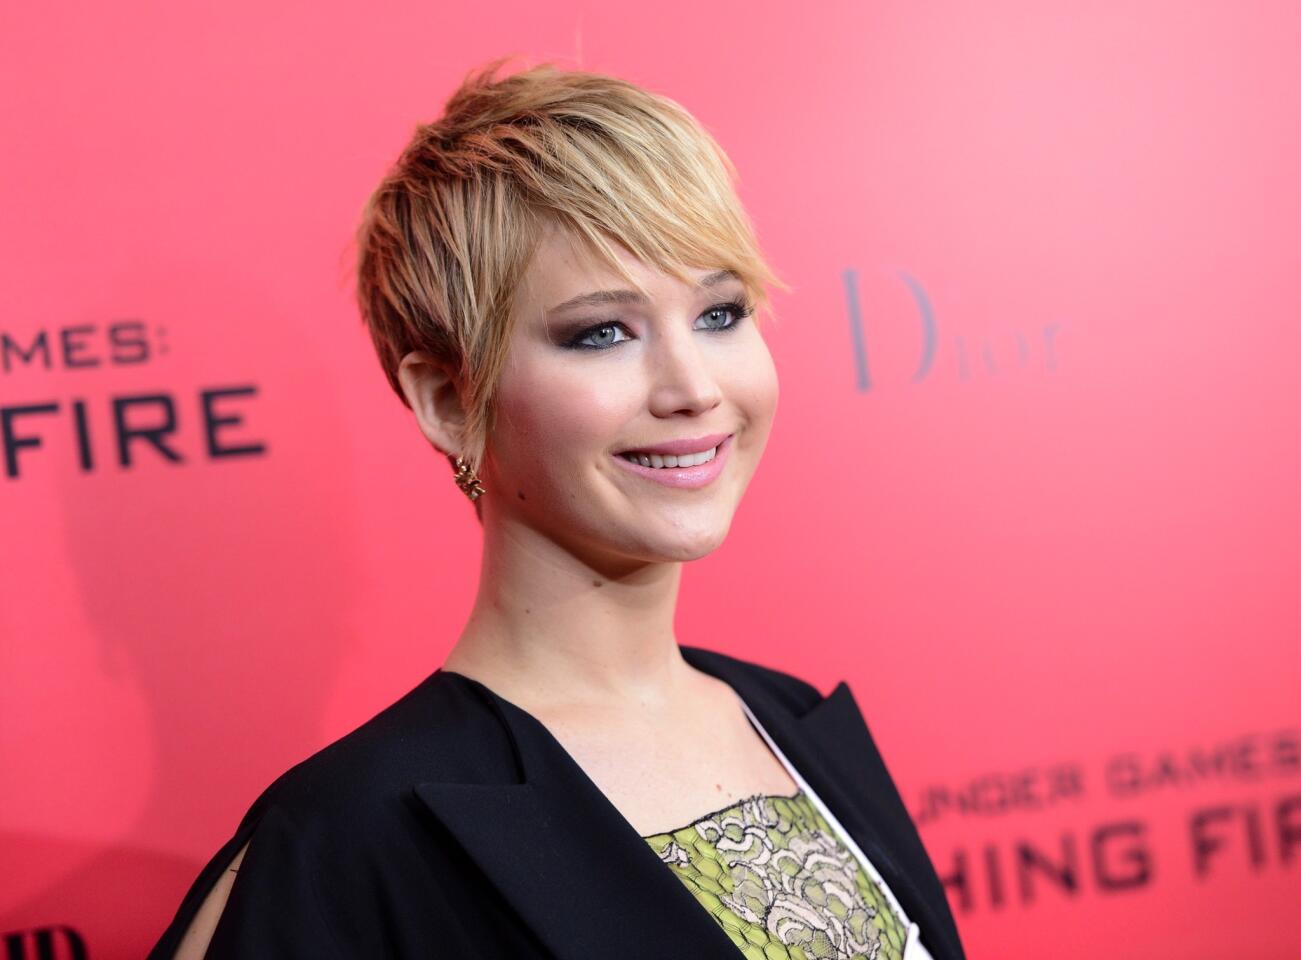 Jennifer Lawrence among nominees for Golden Globes, SAG Awards